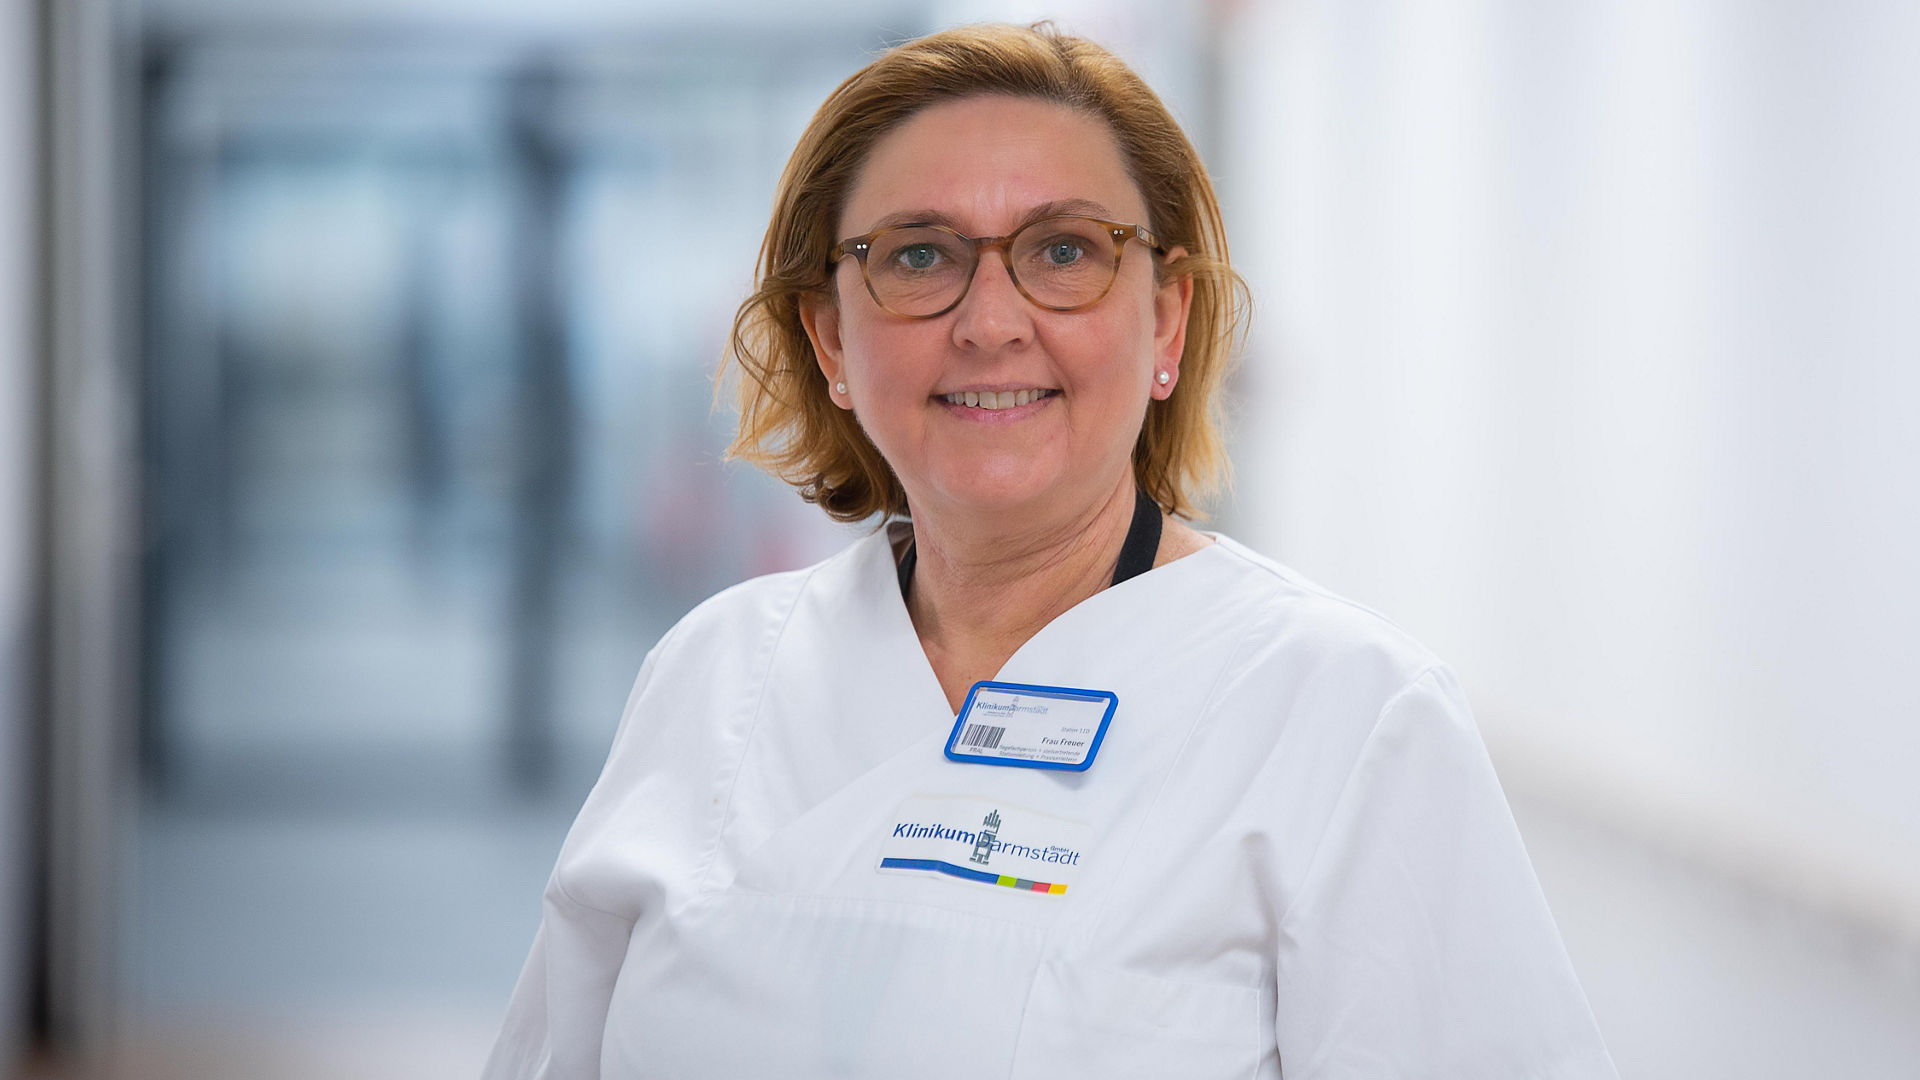 Alexandra Freuer arbeitet als Stationsleiterin am Klinikum Darmstadt und studiert berufsbegleitend an der FOM Hochschule in Frankfurt am Main.